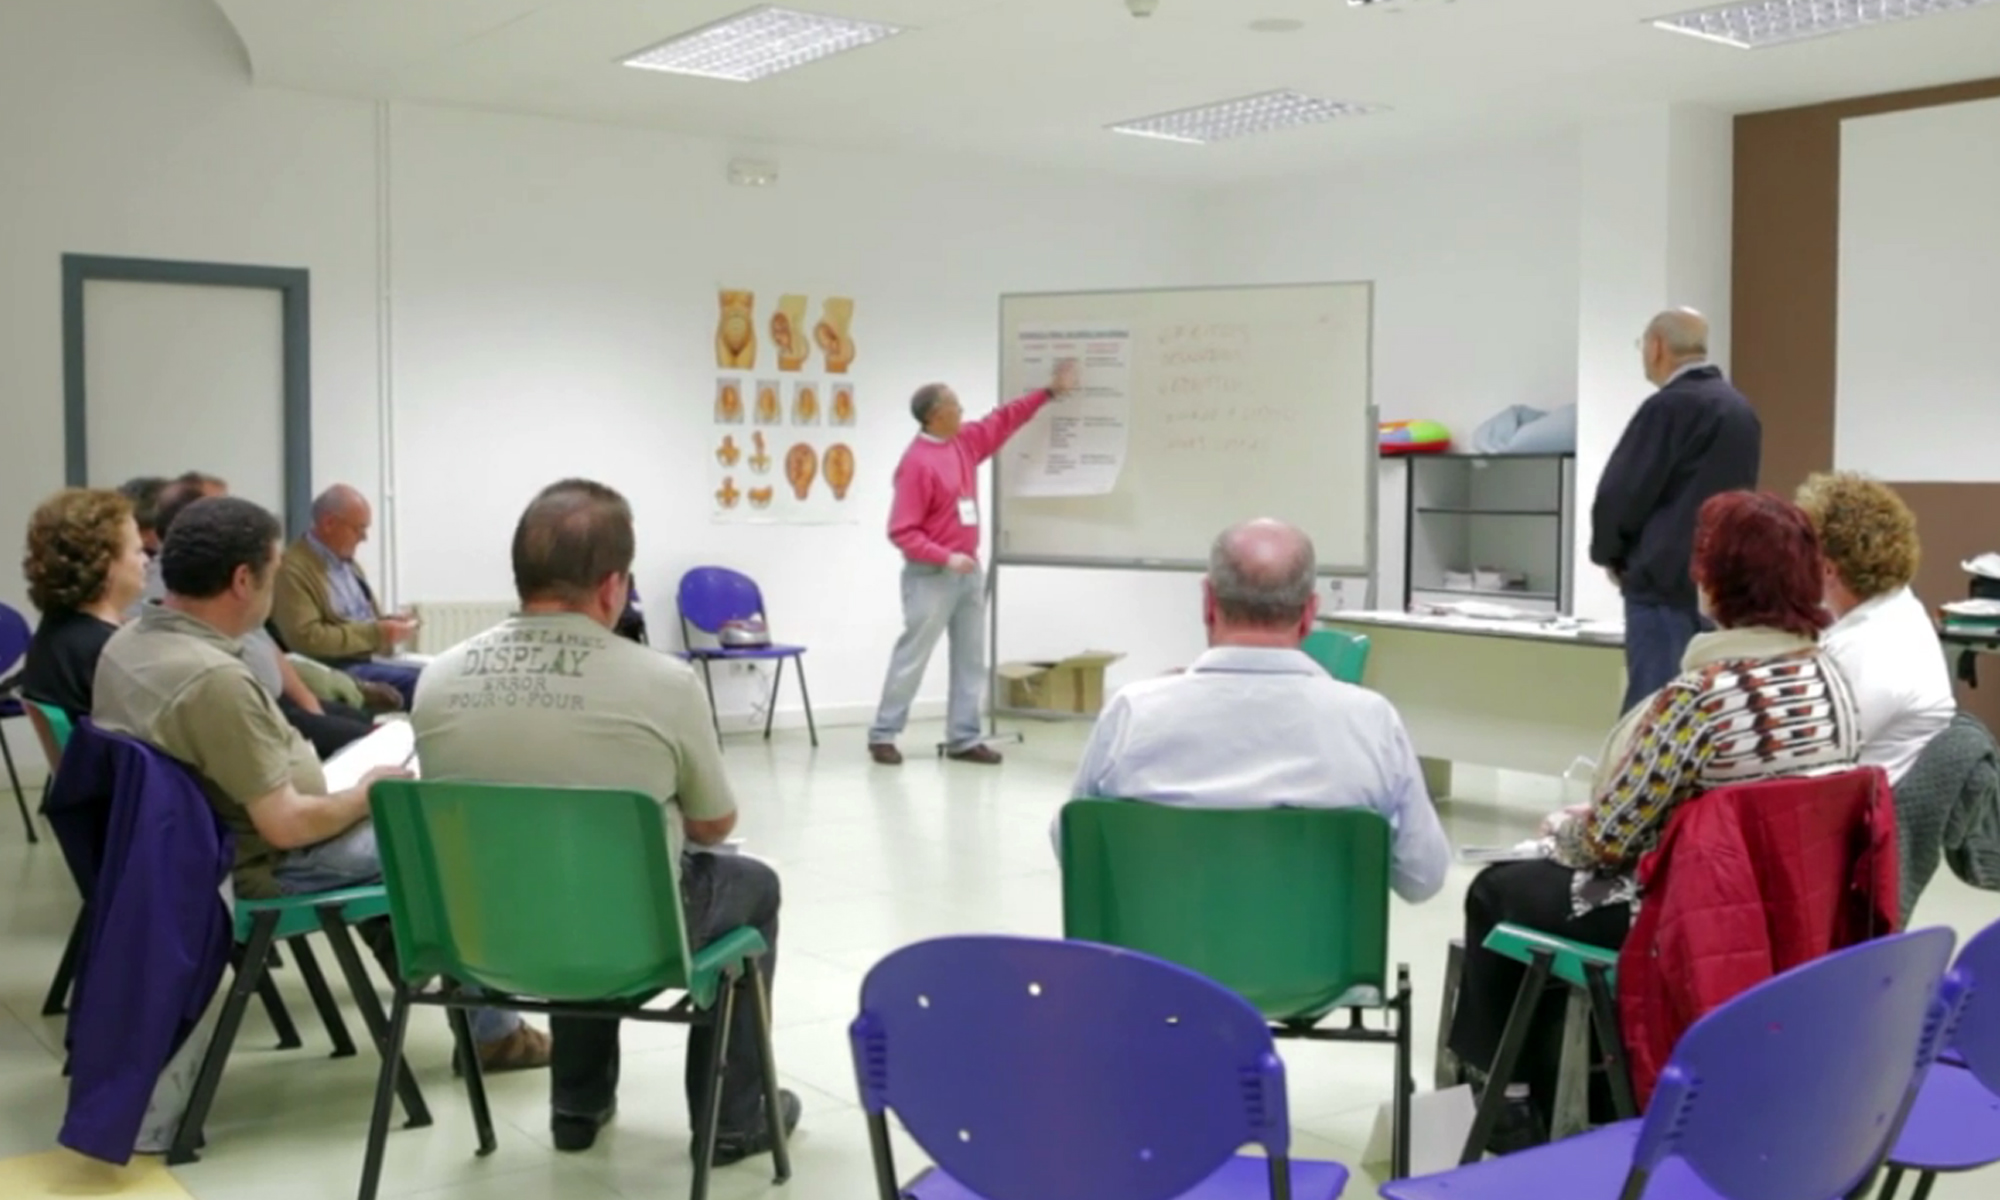 La OSI Bilbao Basurto organiza cursos para “Pacientes Activos” :: Bilbo-Basurtu ESIak “Paziente Aktibo”entzako ikastaro batzuk antolatzen ditu